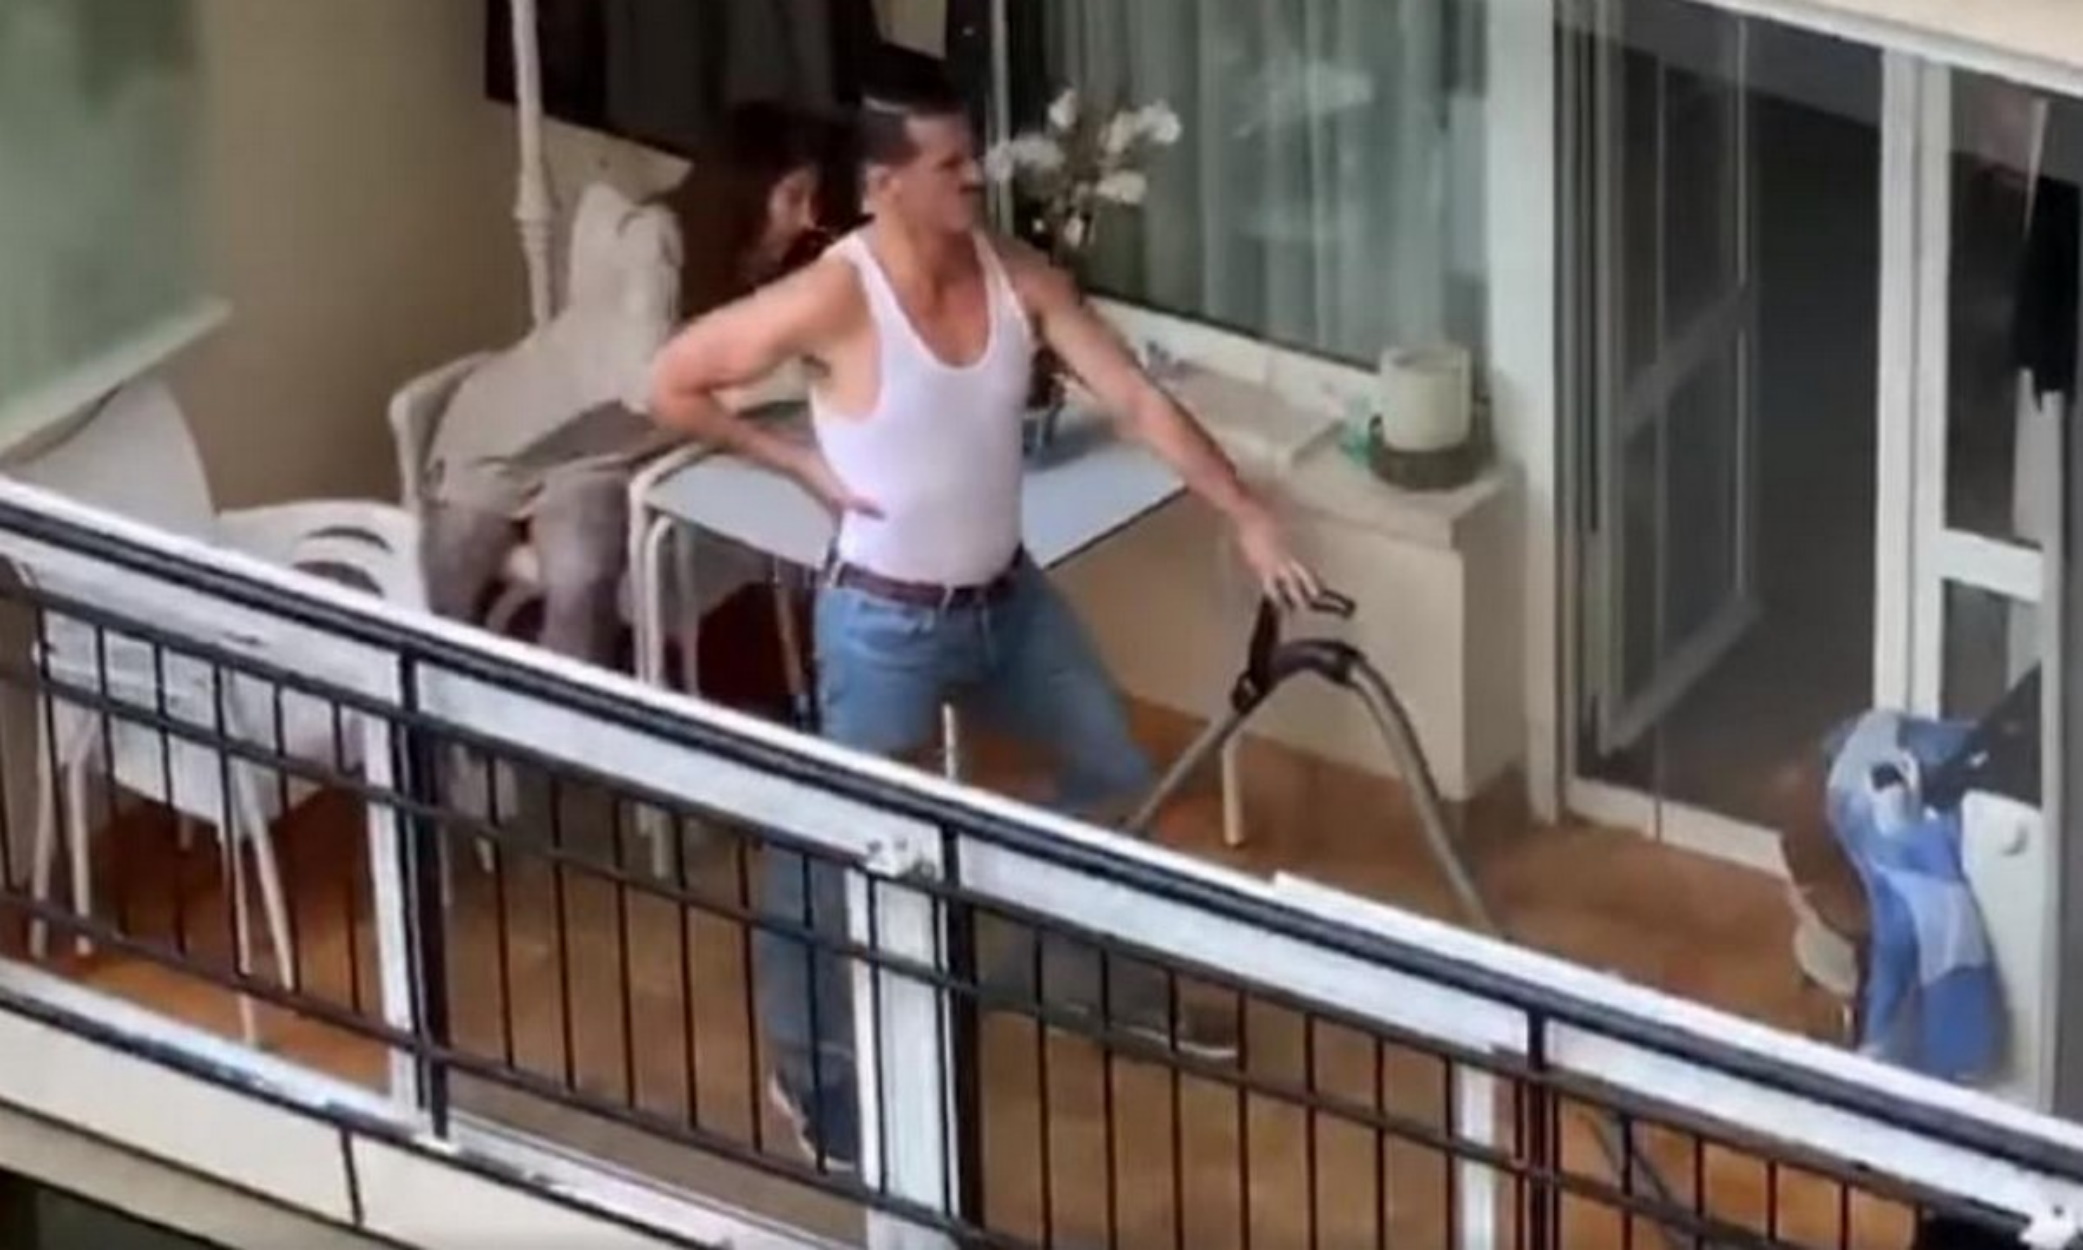 Επικό βίντεο: Σωσίας του Freddie Mercury πήρε τη σκούπα και χορεύει στο μπαλκόνι